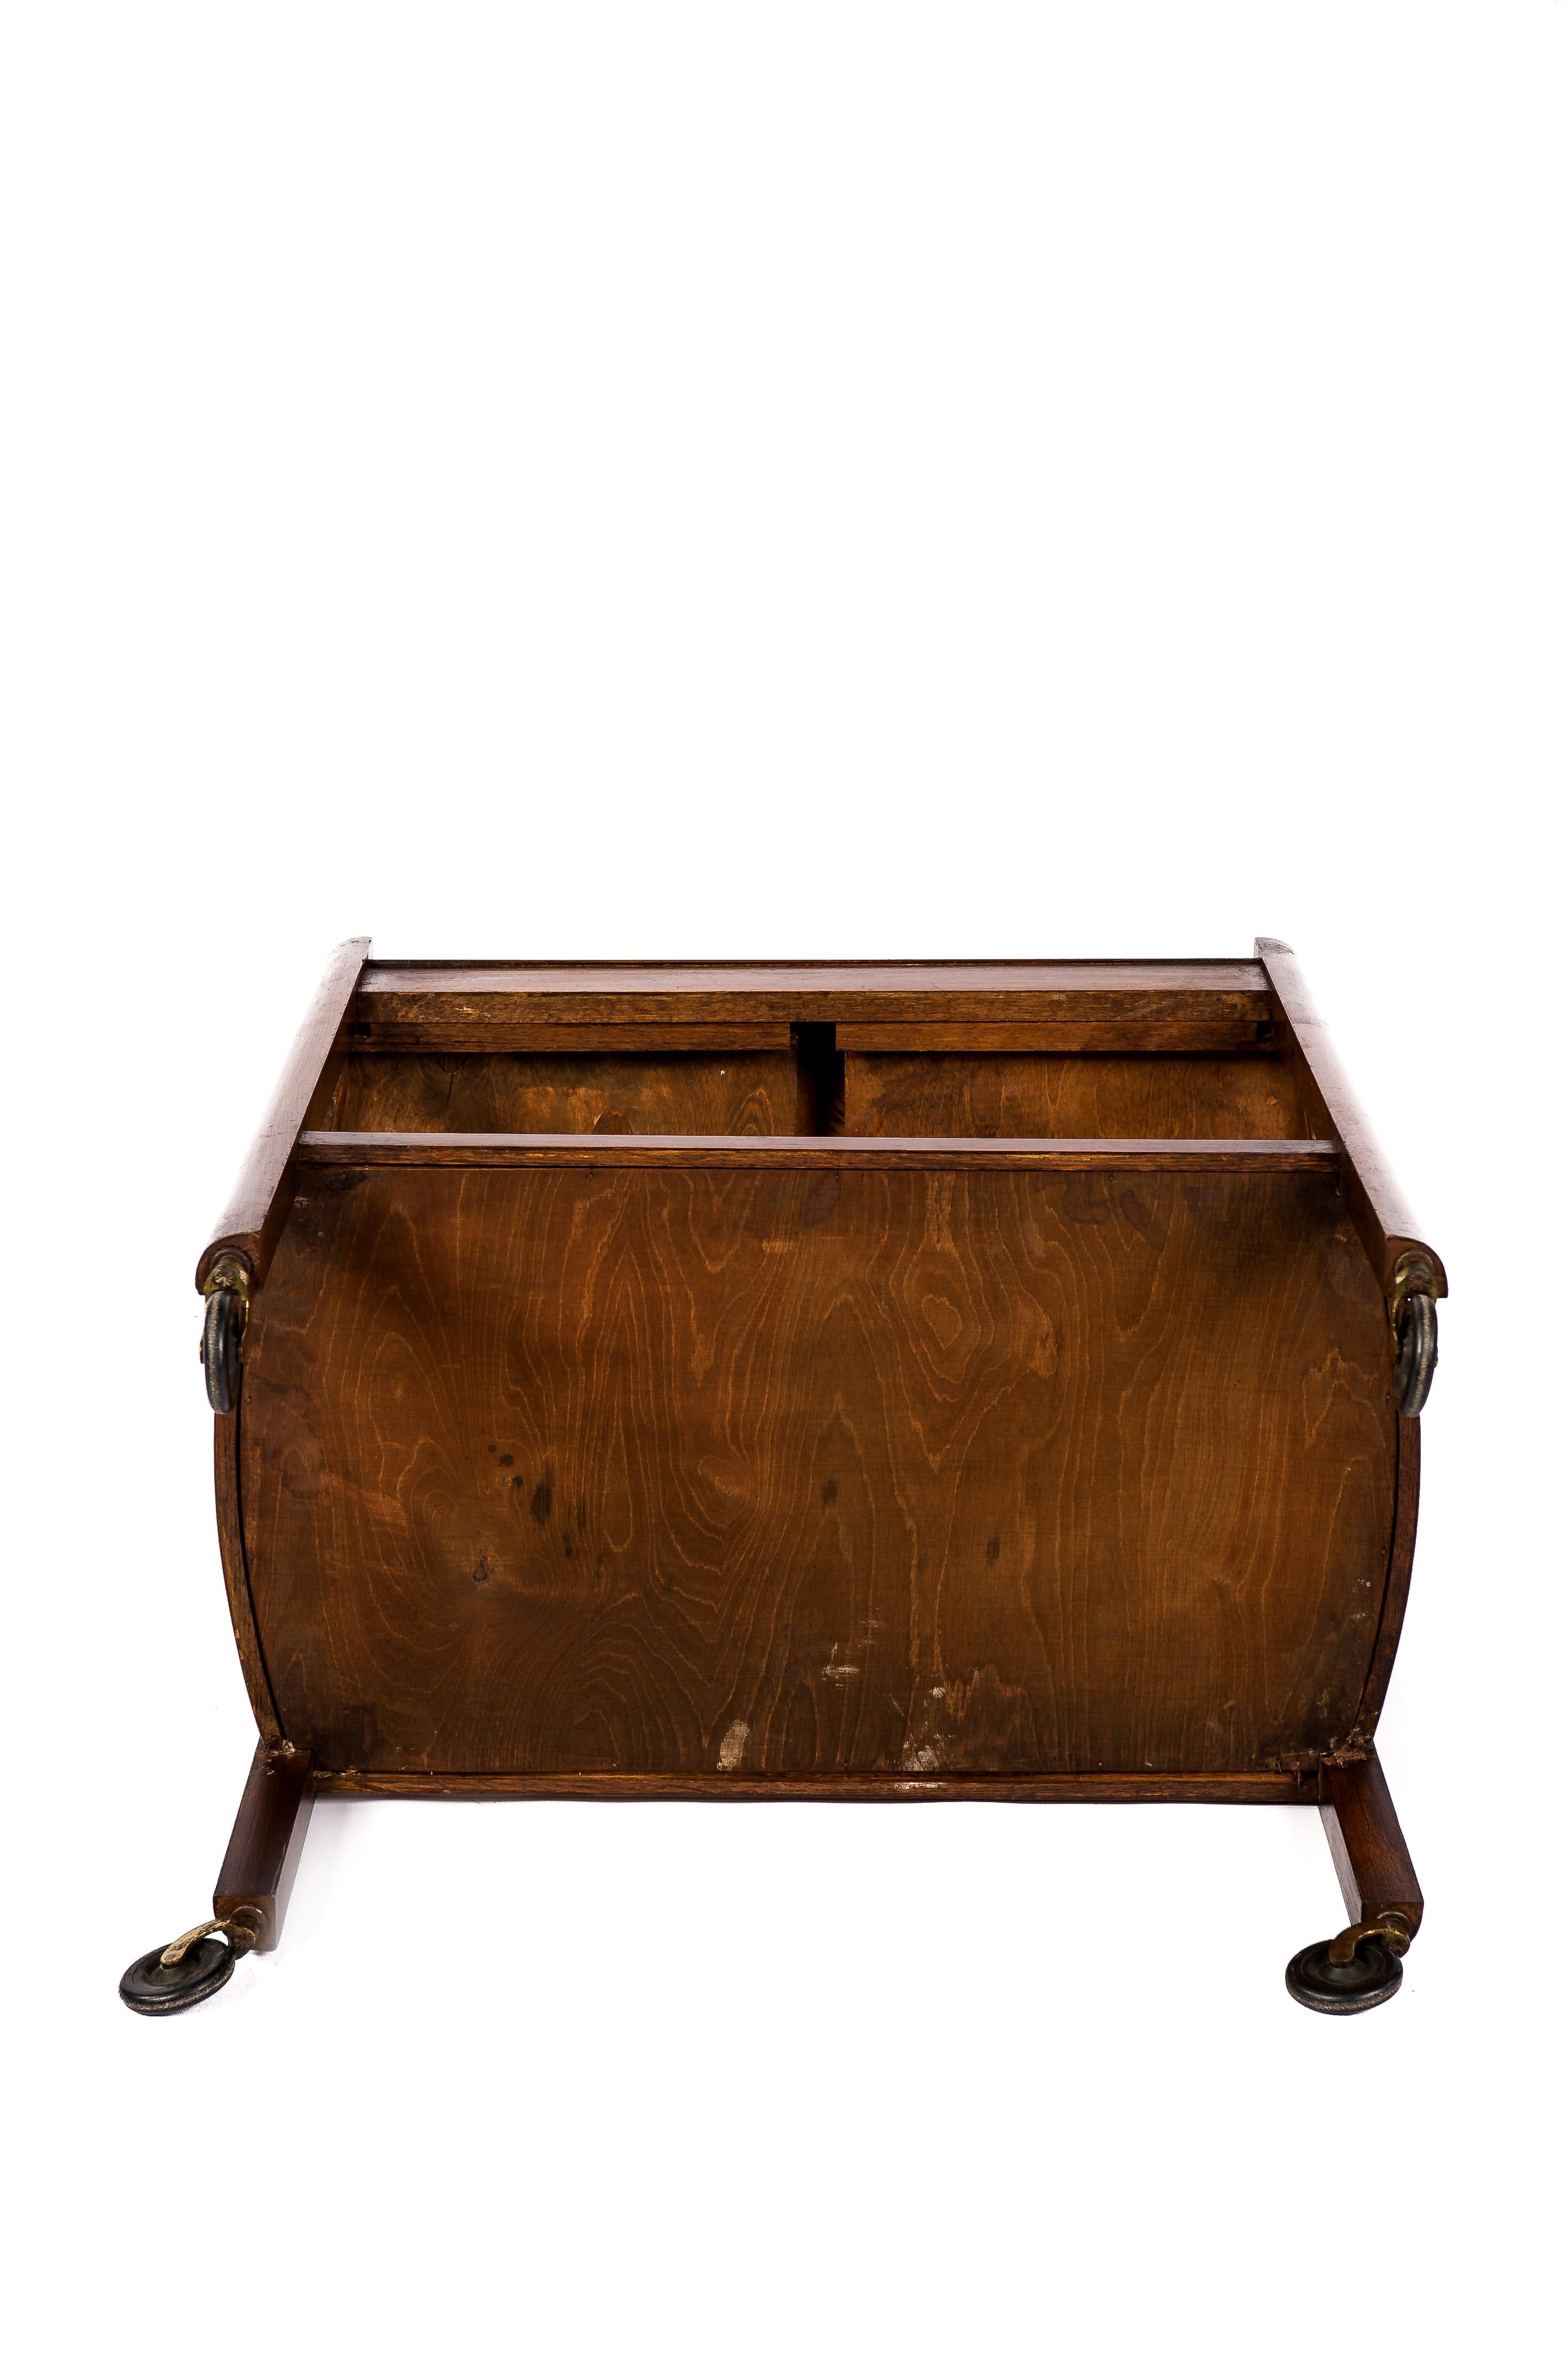 antique wooden bar cart